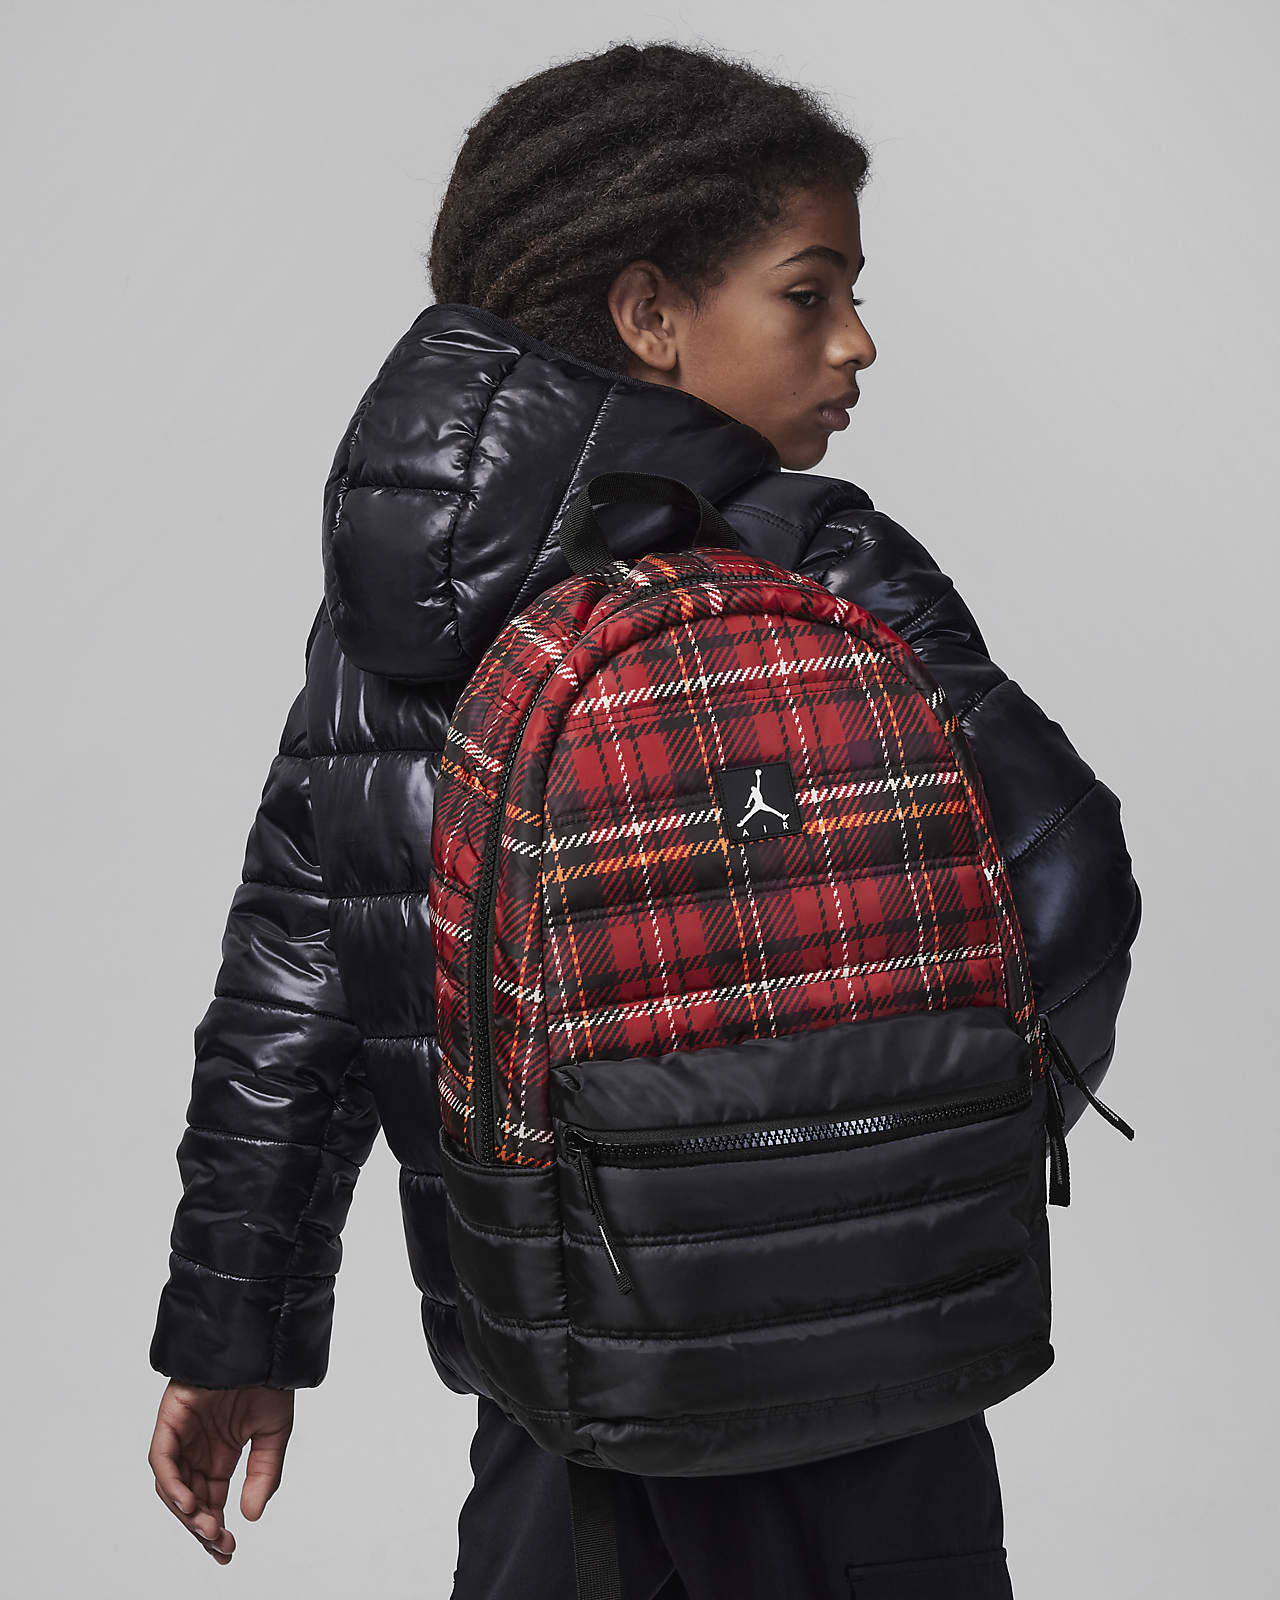 Mochila Jordan Quilted Backpack (19 L)